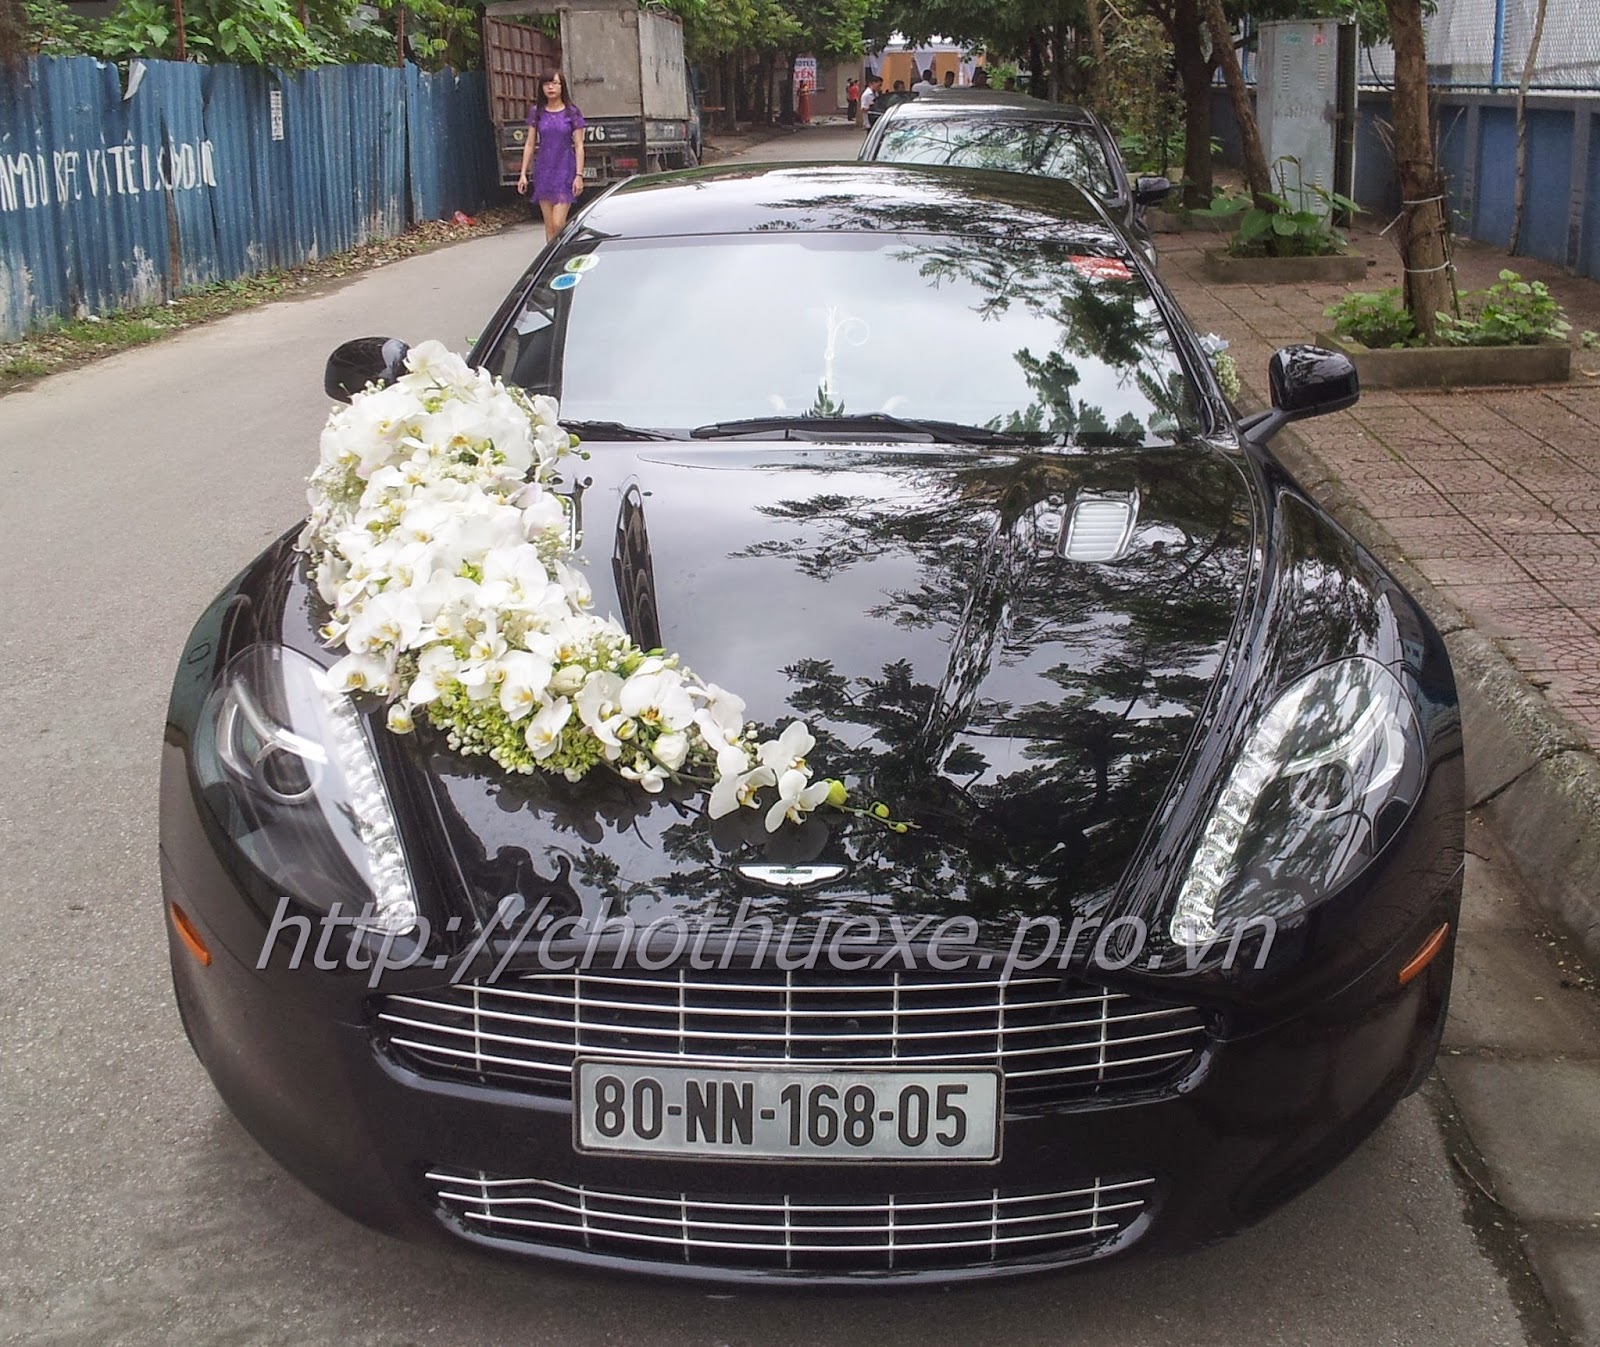 Cho thuê xe siêu xe cưới Aston Martin Rapide tại Hà Nội - giá ưu đãi siêu xe mới 